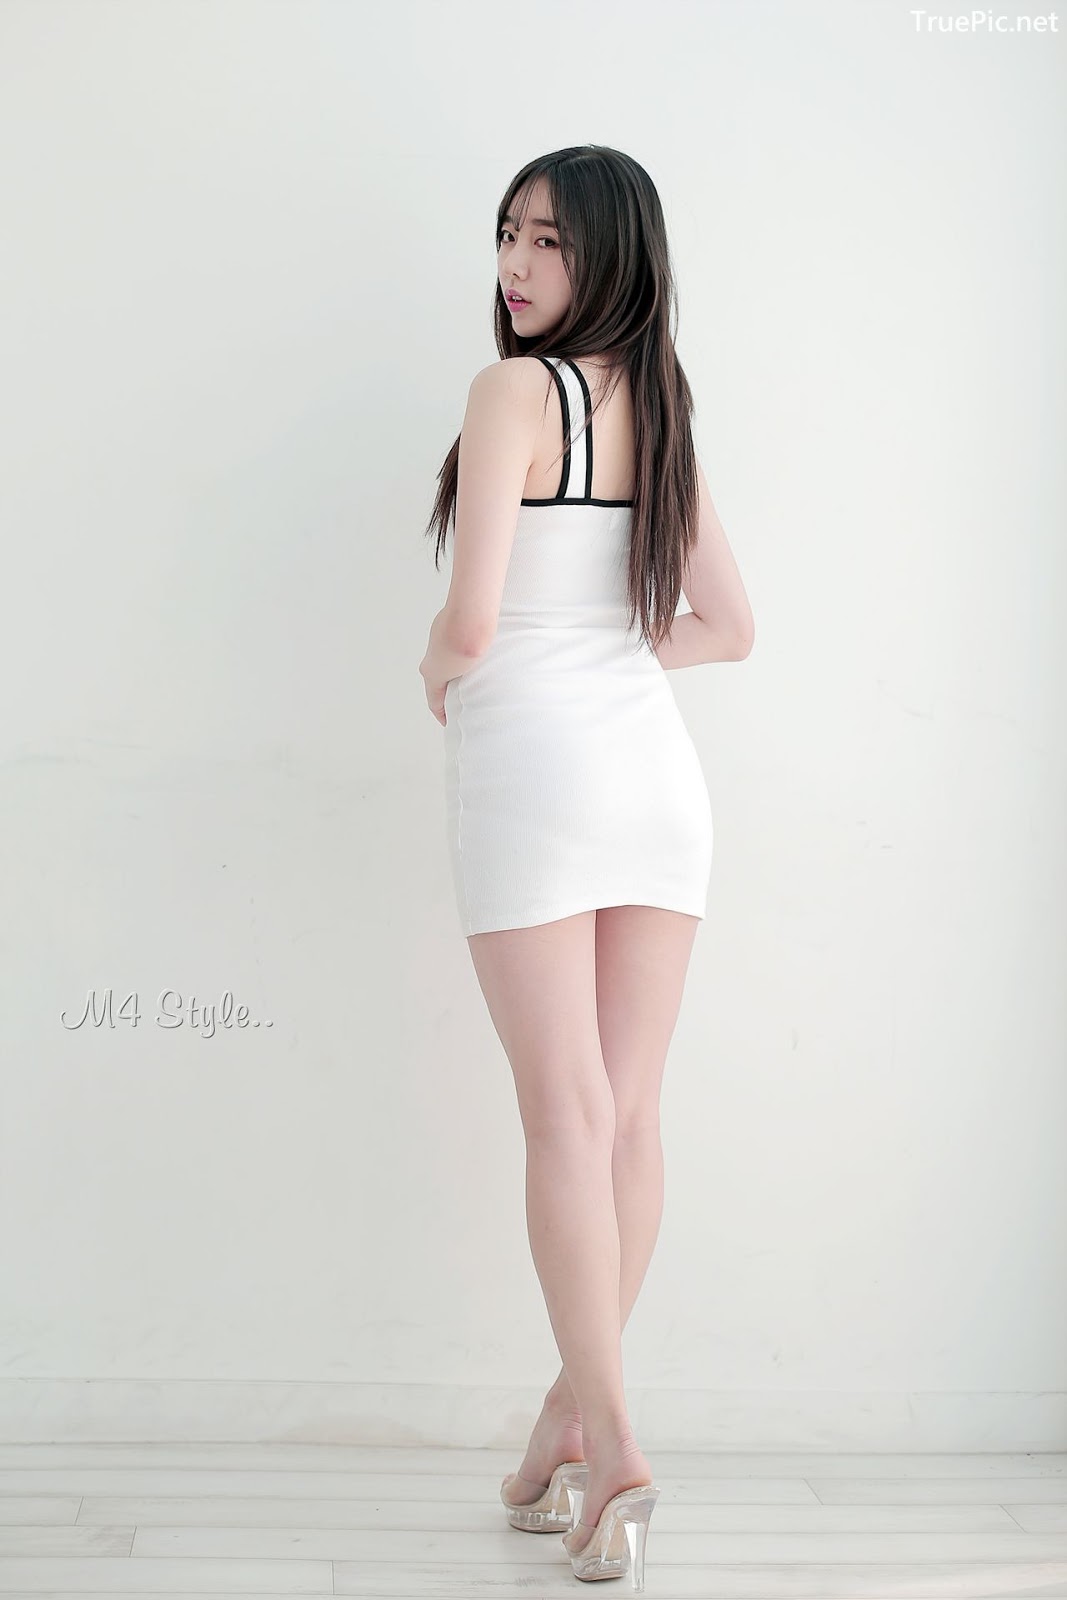 Image-Korean-Hot-Model-Go-Eun-Yang-Indoor-Photoshoot-Collection-TruePic.net- Picture-49